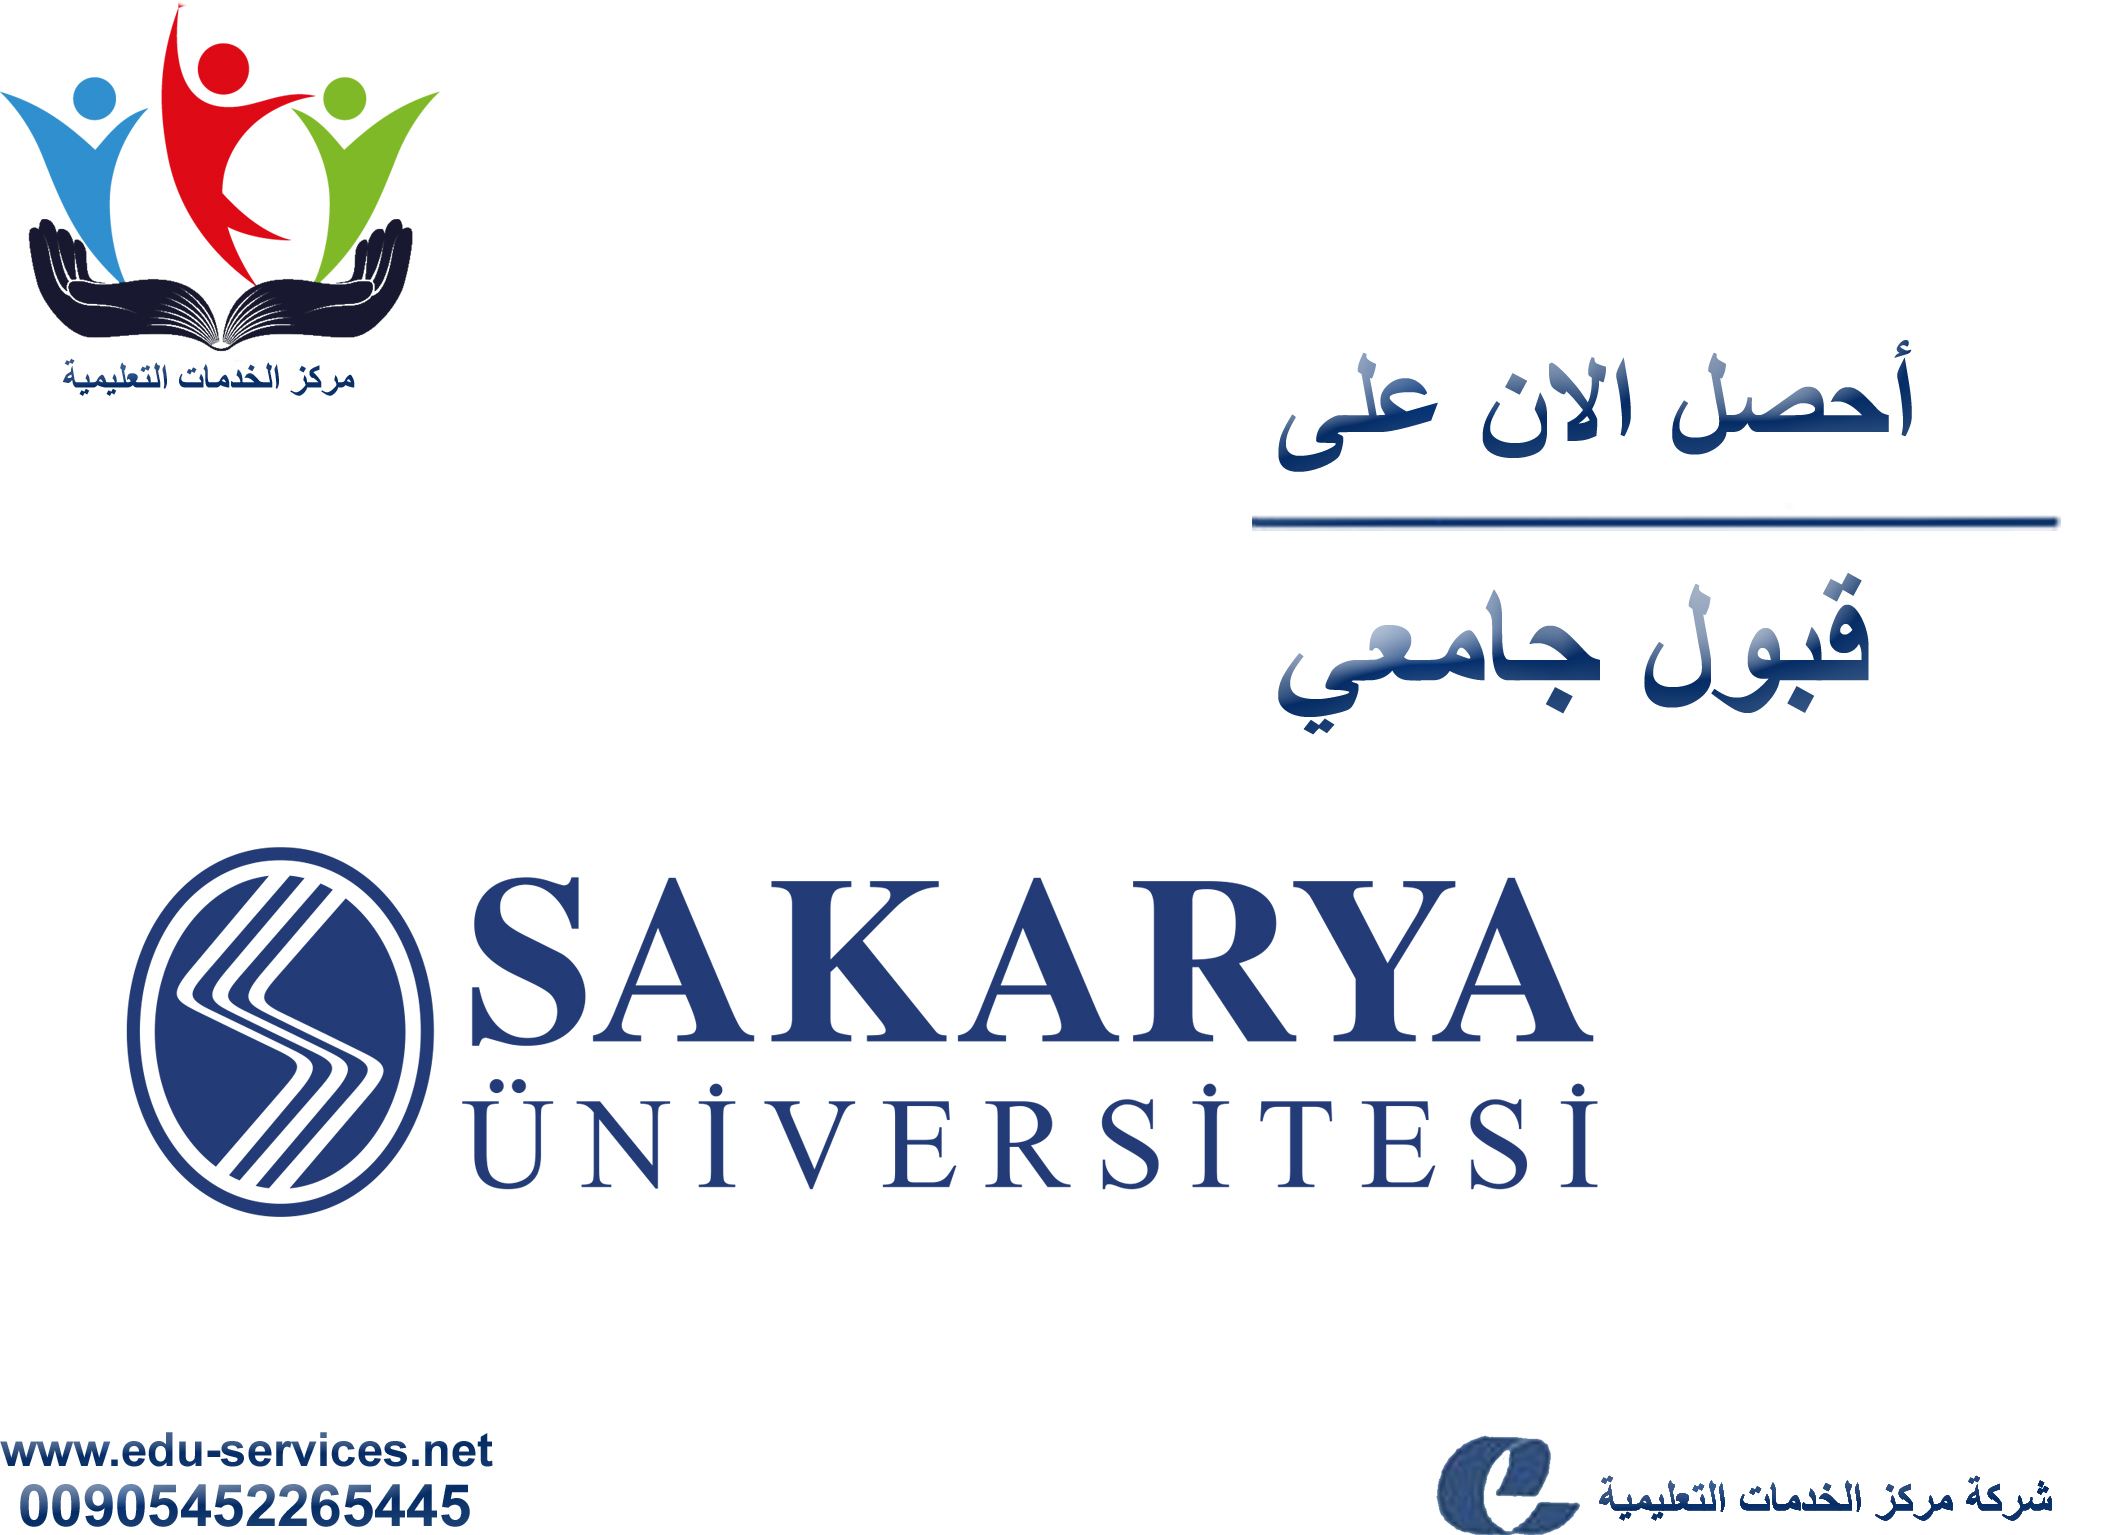 افتتاح التسجيل في جامعة سكاريا للعام 2017-2018